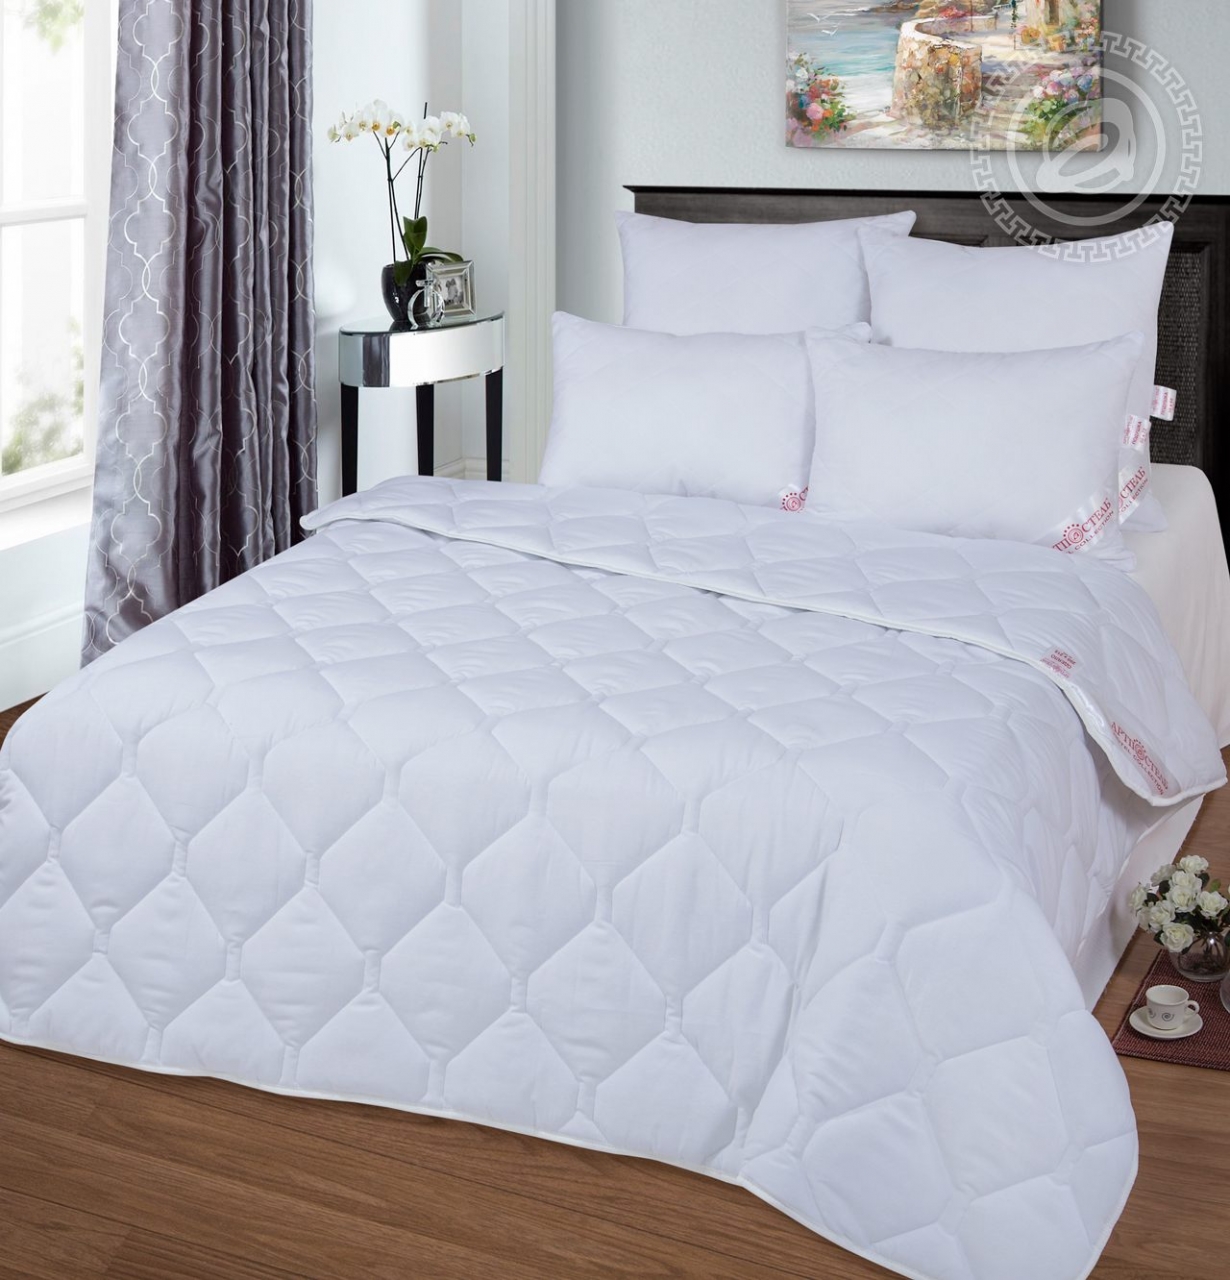 Одеяло Norman (200х215 см), размер 200х215 см, цвет белый atp465933 Одеяло Norman (200х215 см) - фото 1